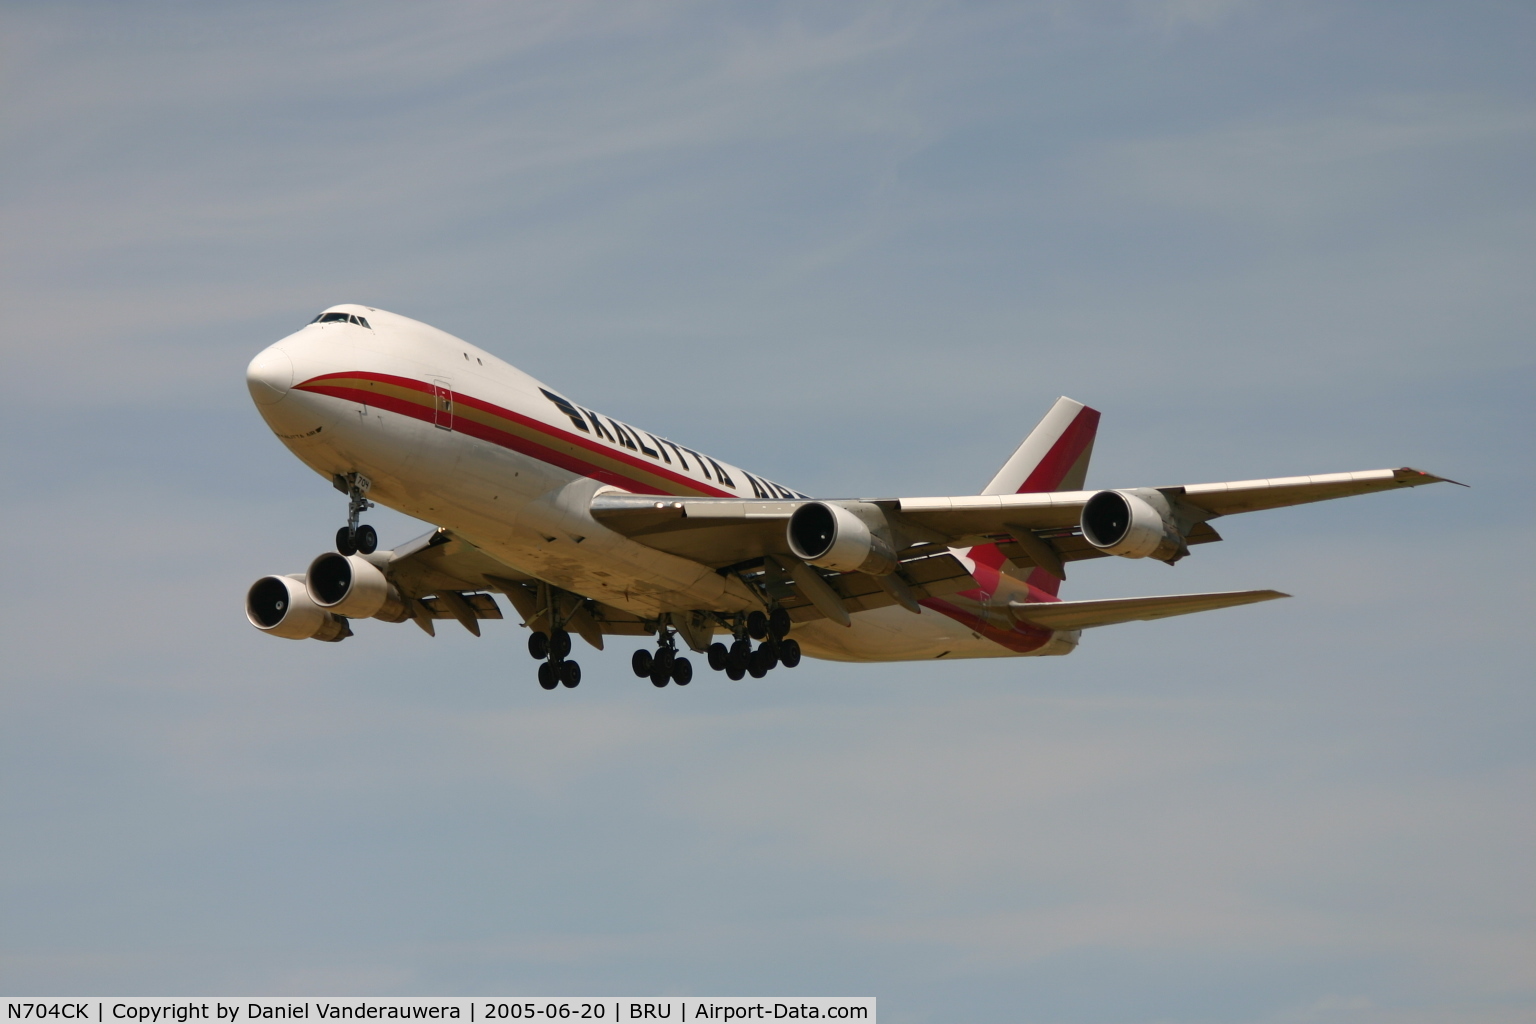 N704CK, 1980 Boeing 747-209F C/N 22299, arrival on rnw 25R